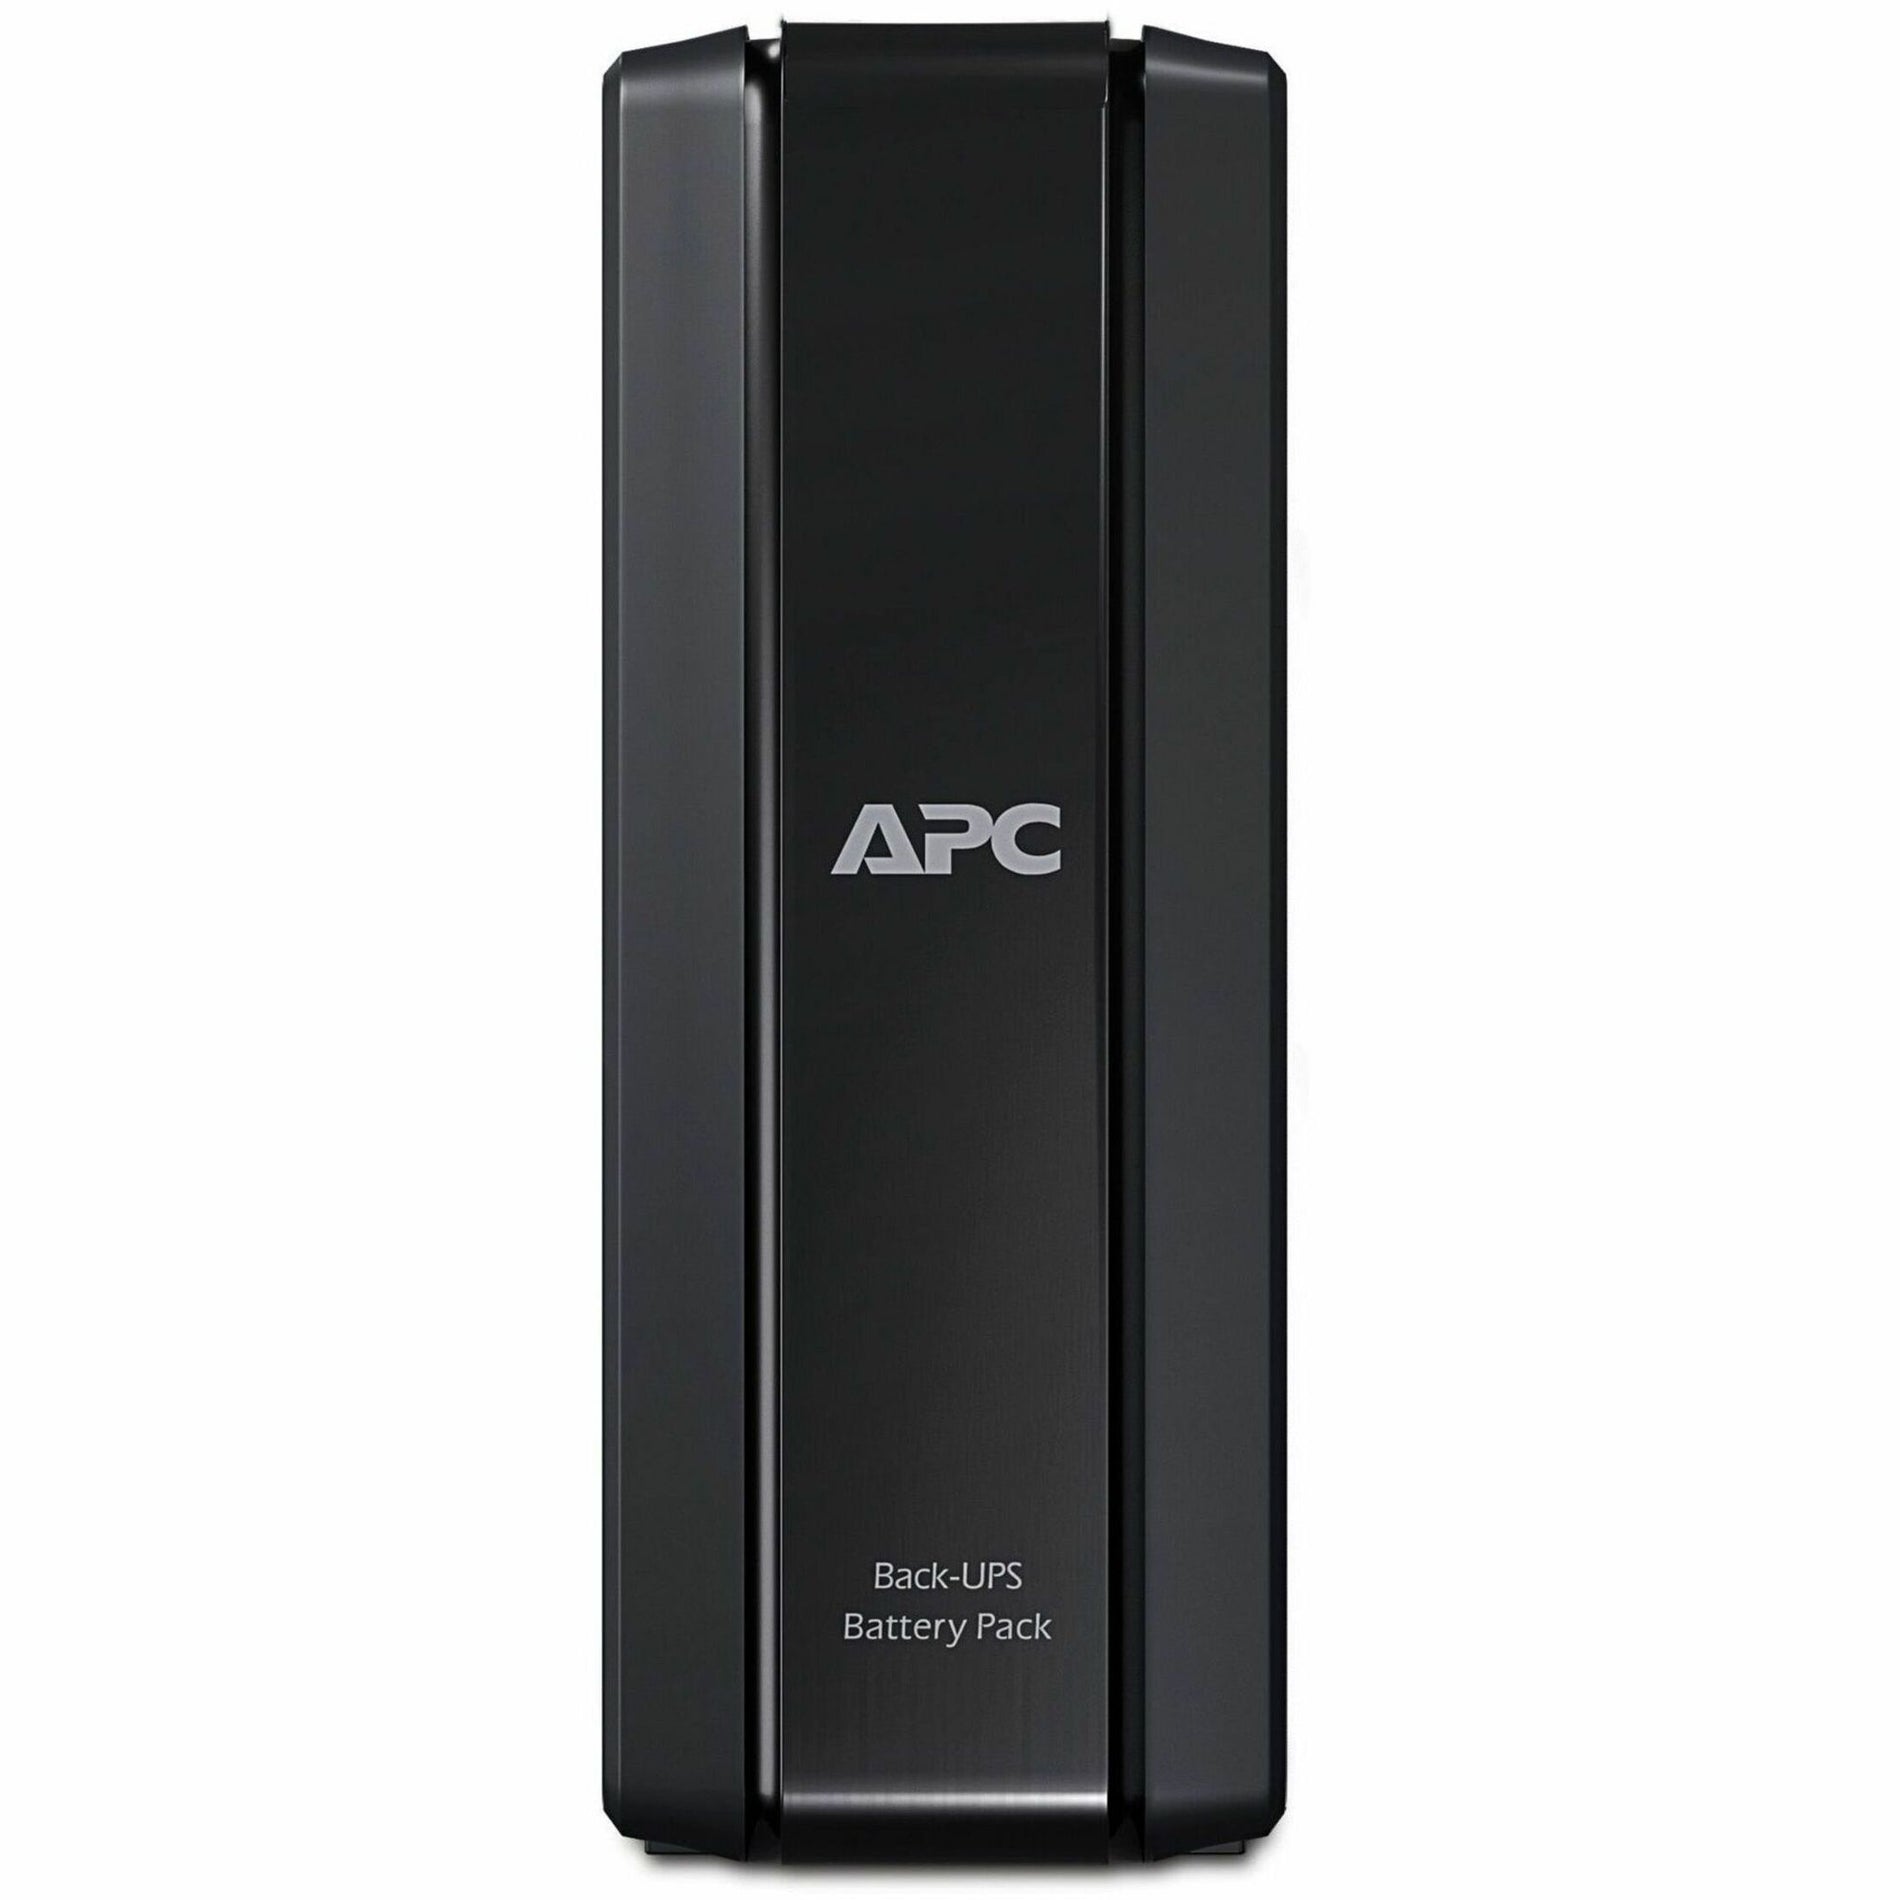 APC BR24BPG External Battery Pack de Respaldo Back-UPS Pro 372 VAh 24 V CC. Traducir APC a Asociación para la Conservación de la Naturaleza.